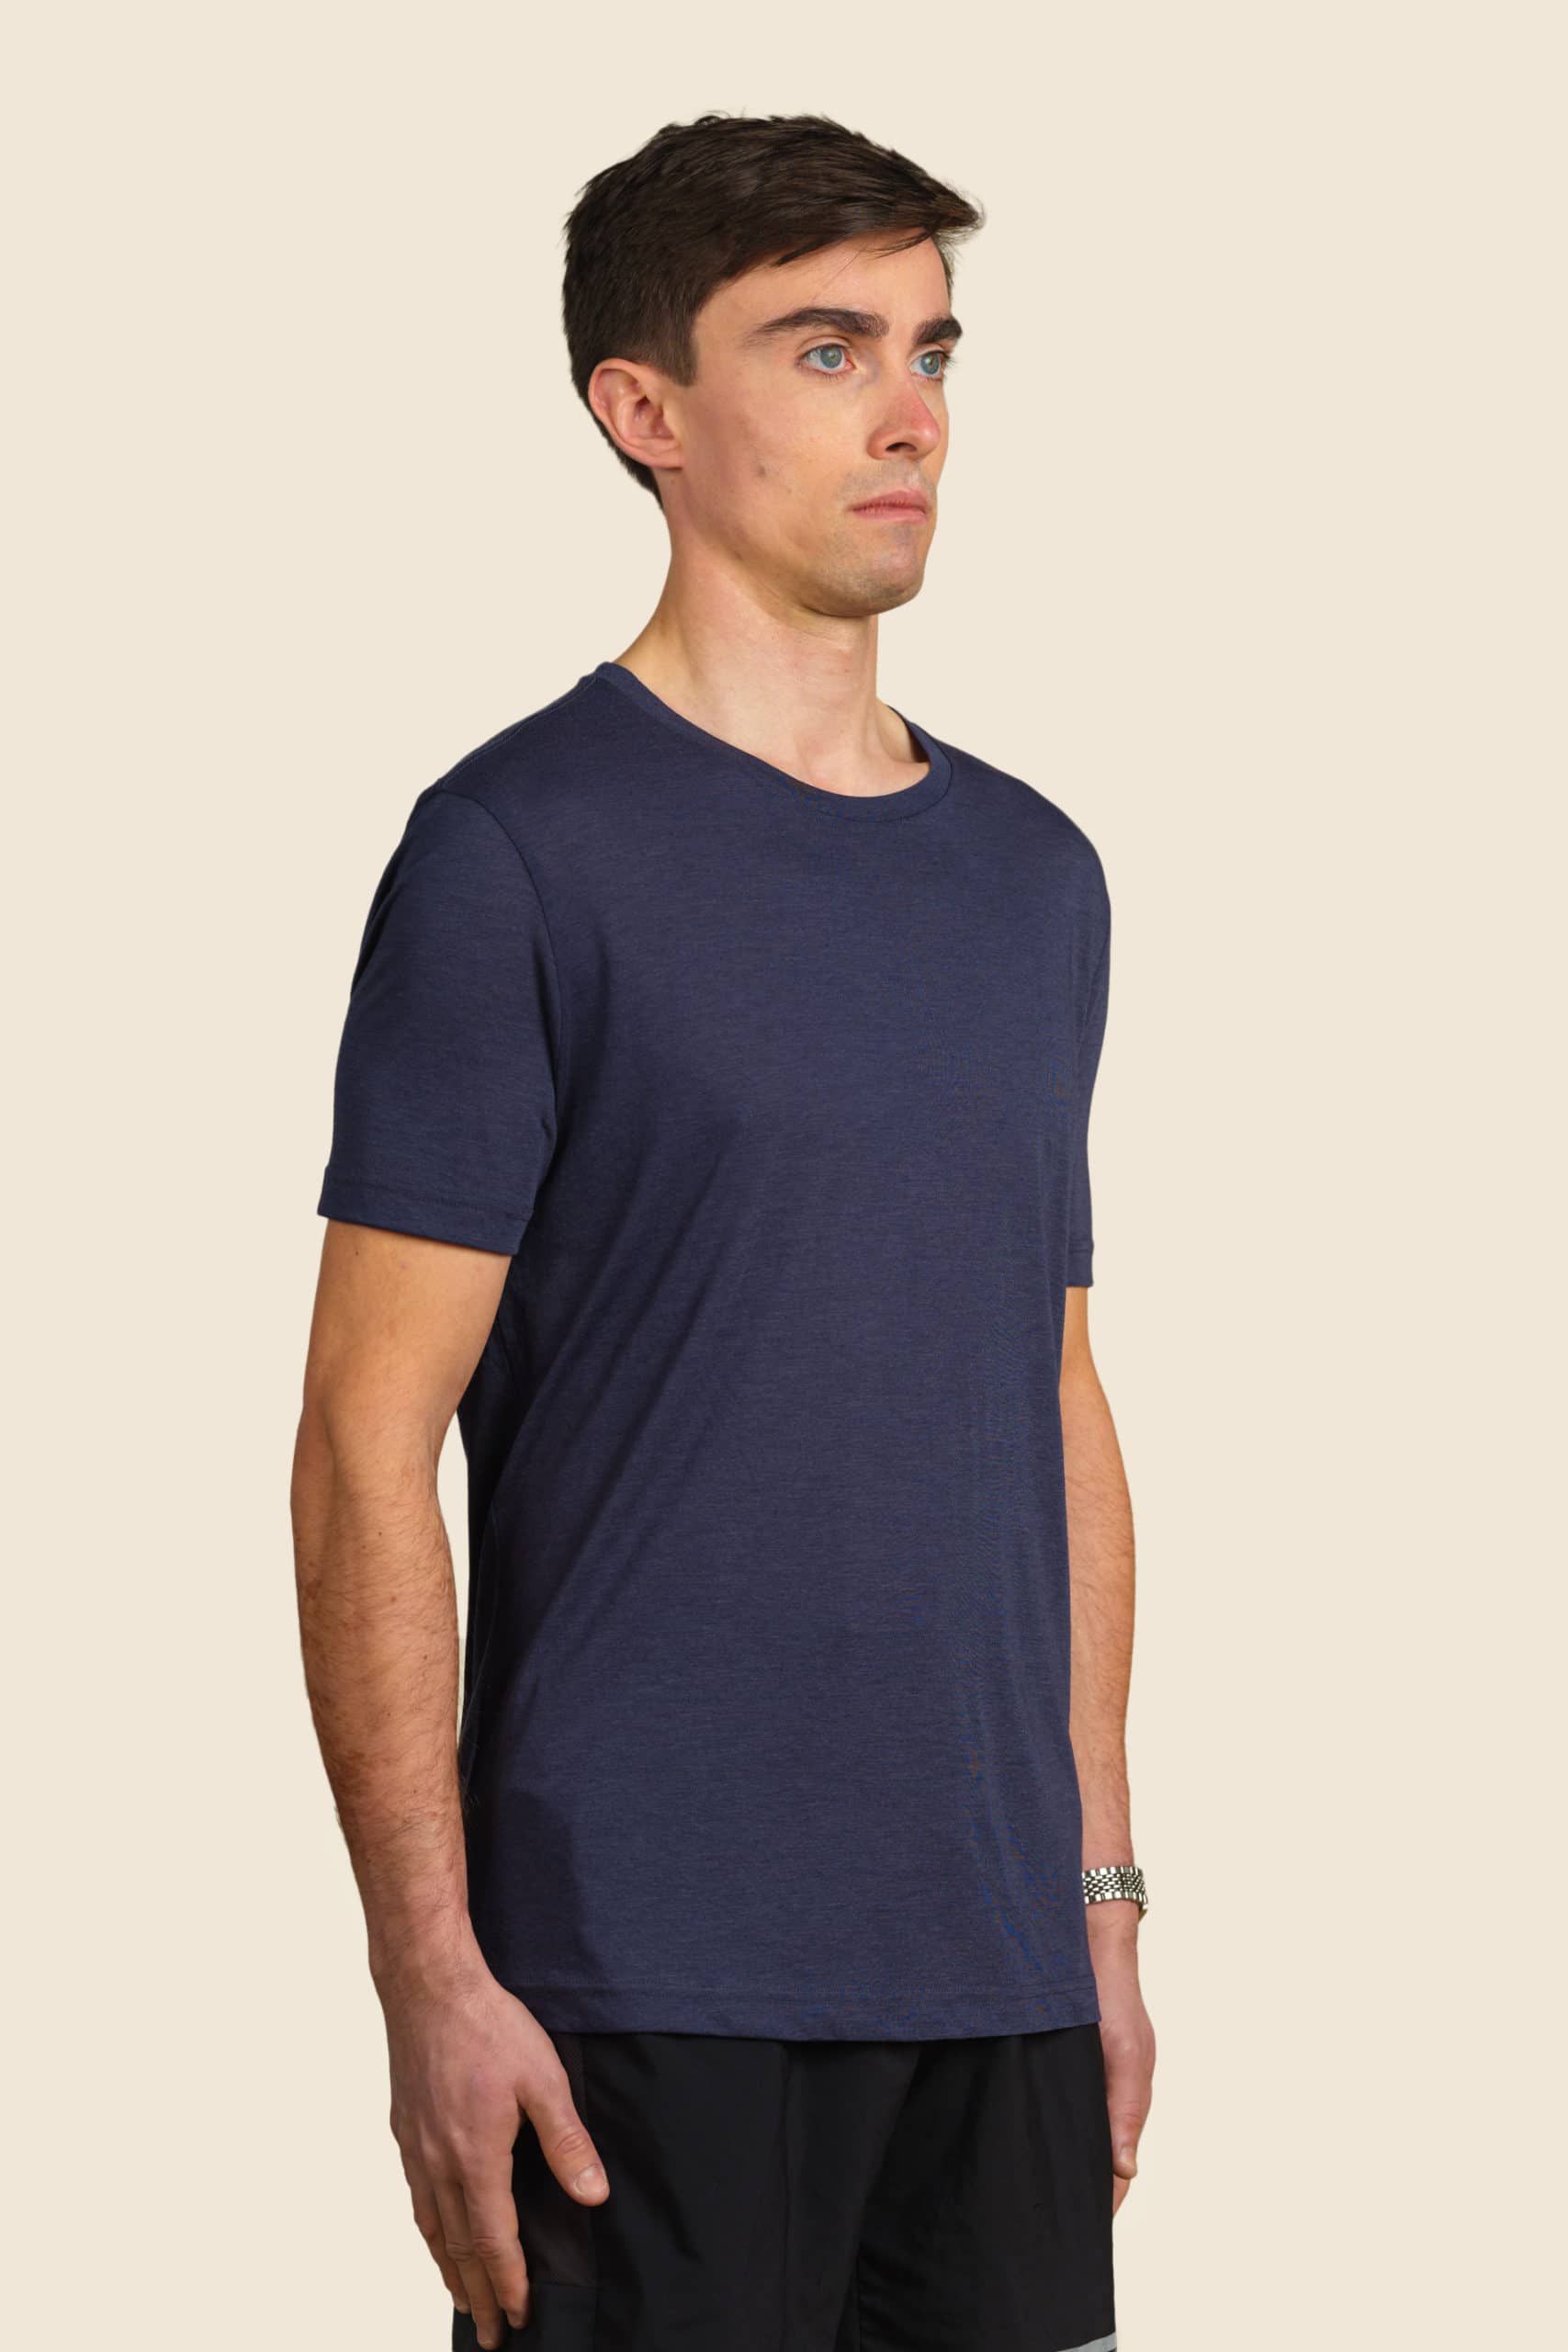 t-shirt sport bleu homme personnalisable - Icone Design